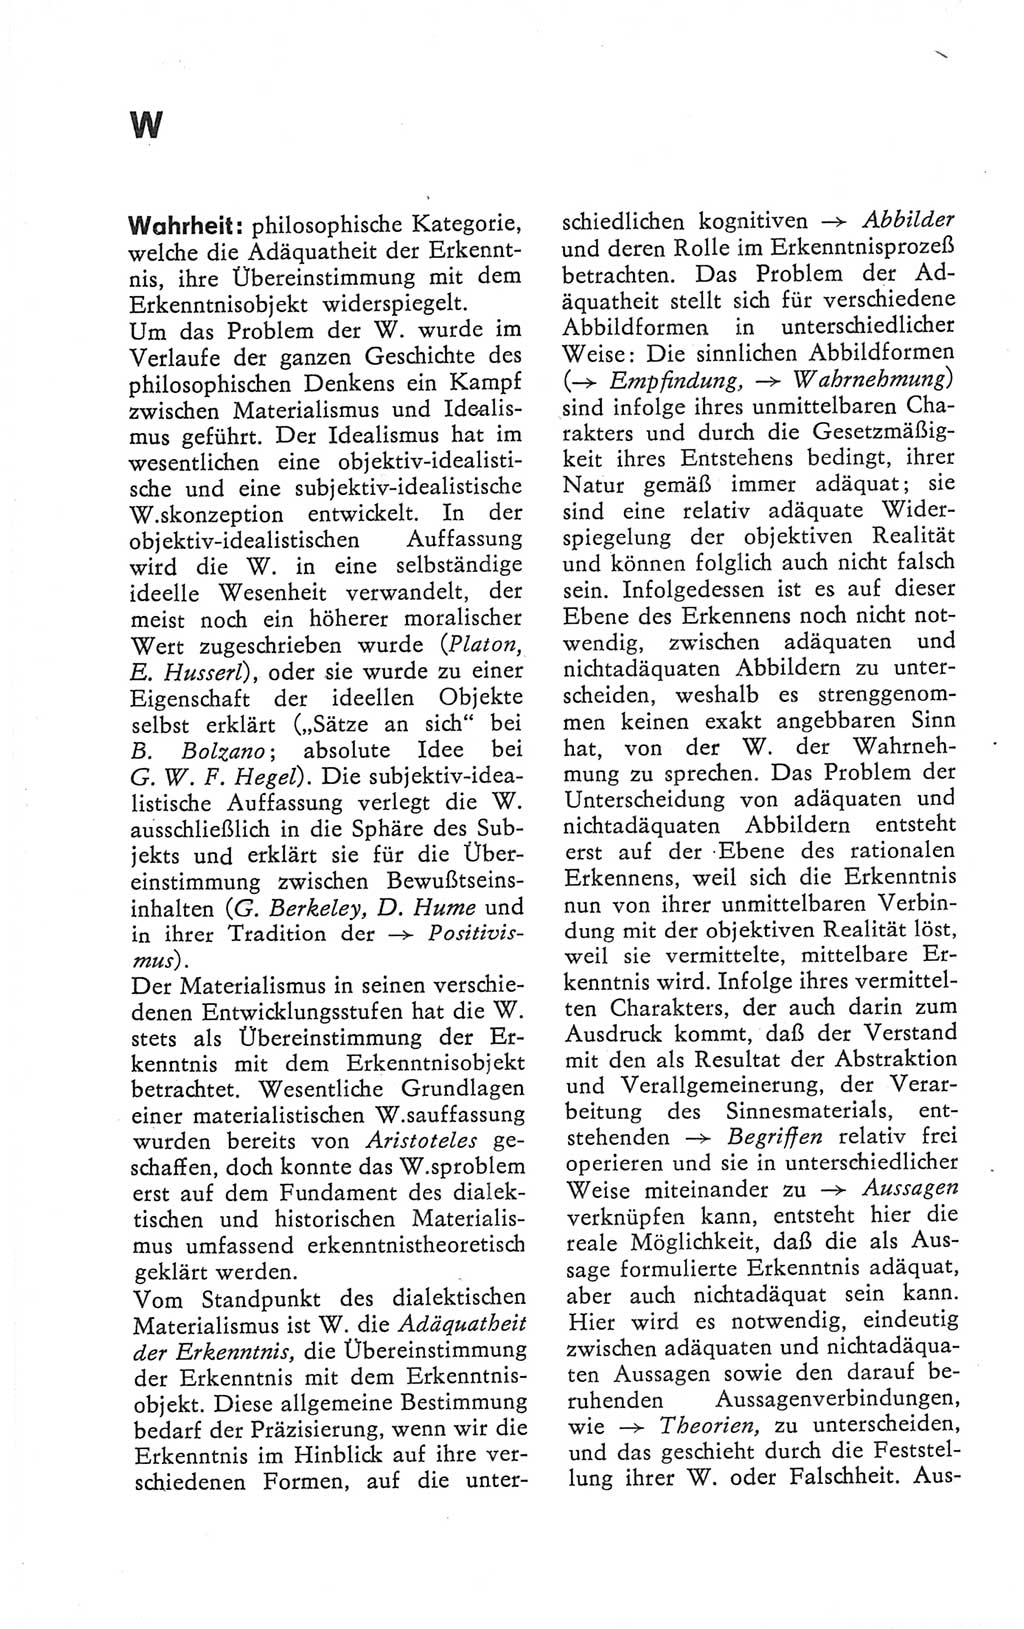 Kleines Wörterbuch der marxistisch-leninistischen Philosophie [Deutsche Demokratische Republik (DDR)] 1979, Seite 334 (Kl. Wb. ML Phil. DDR 1979, S. 334)